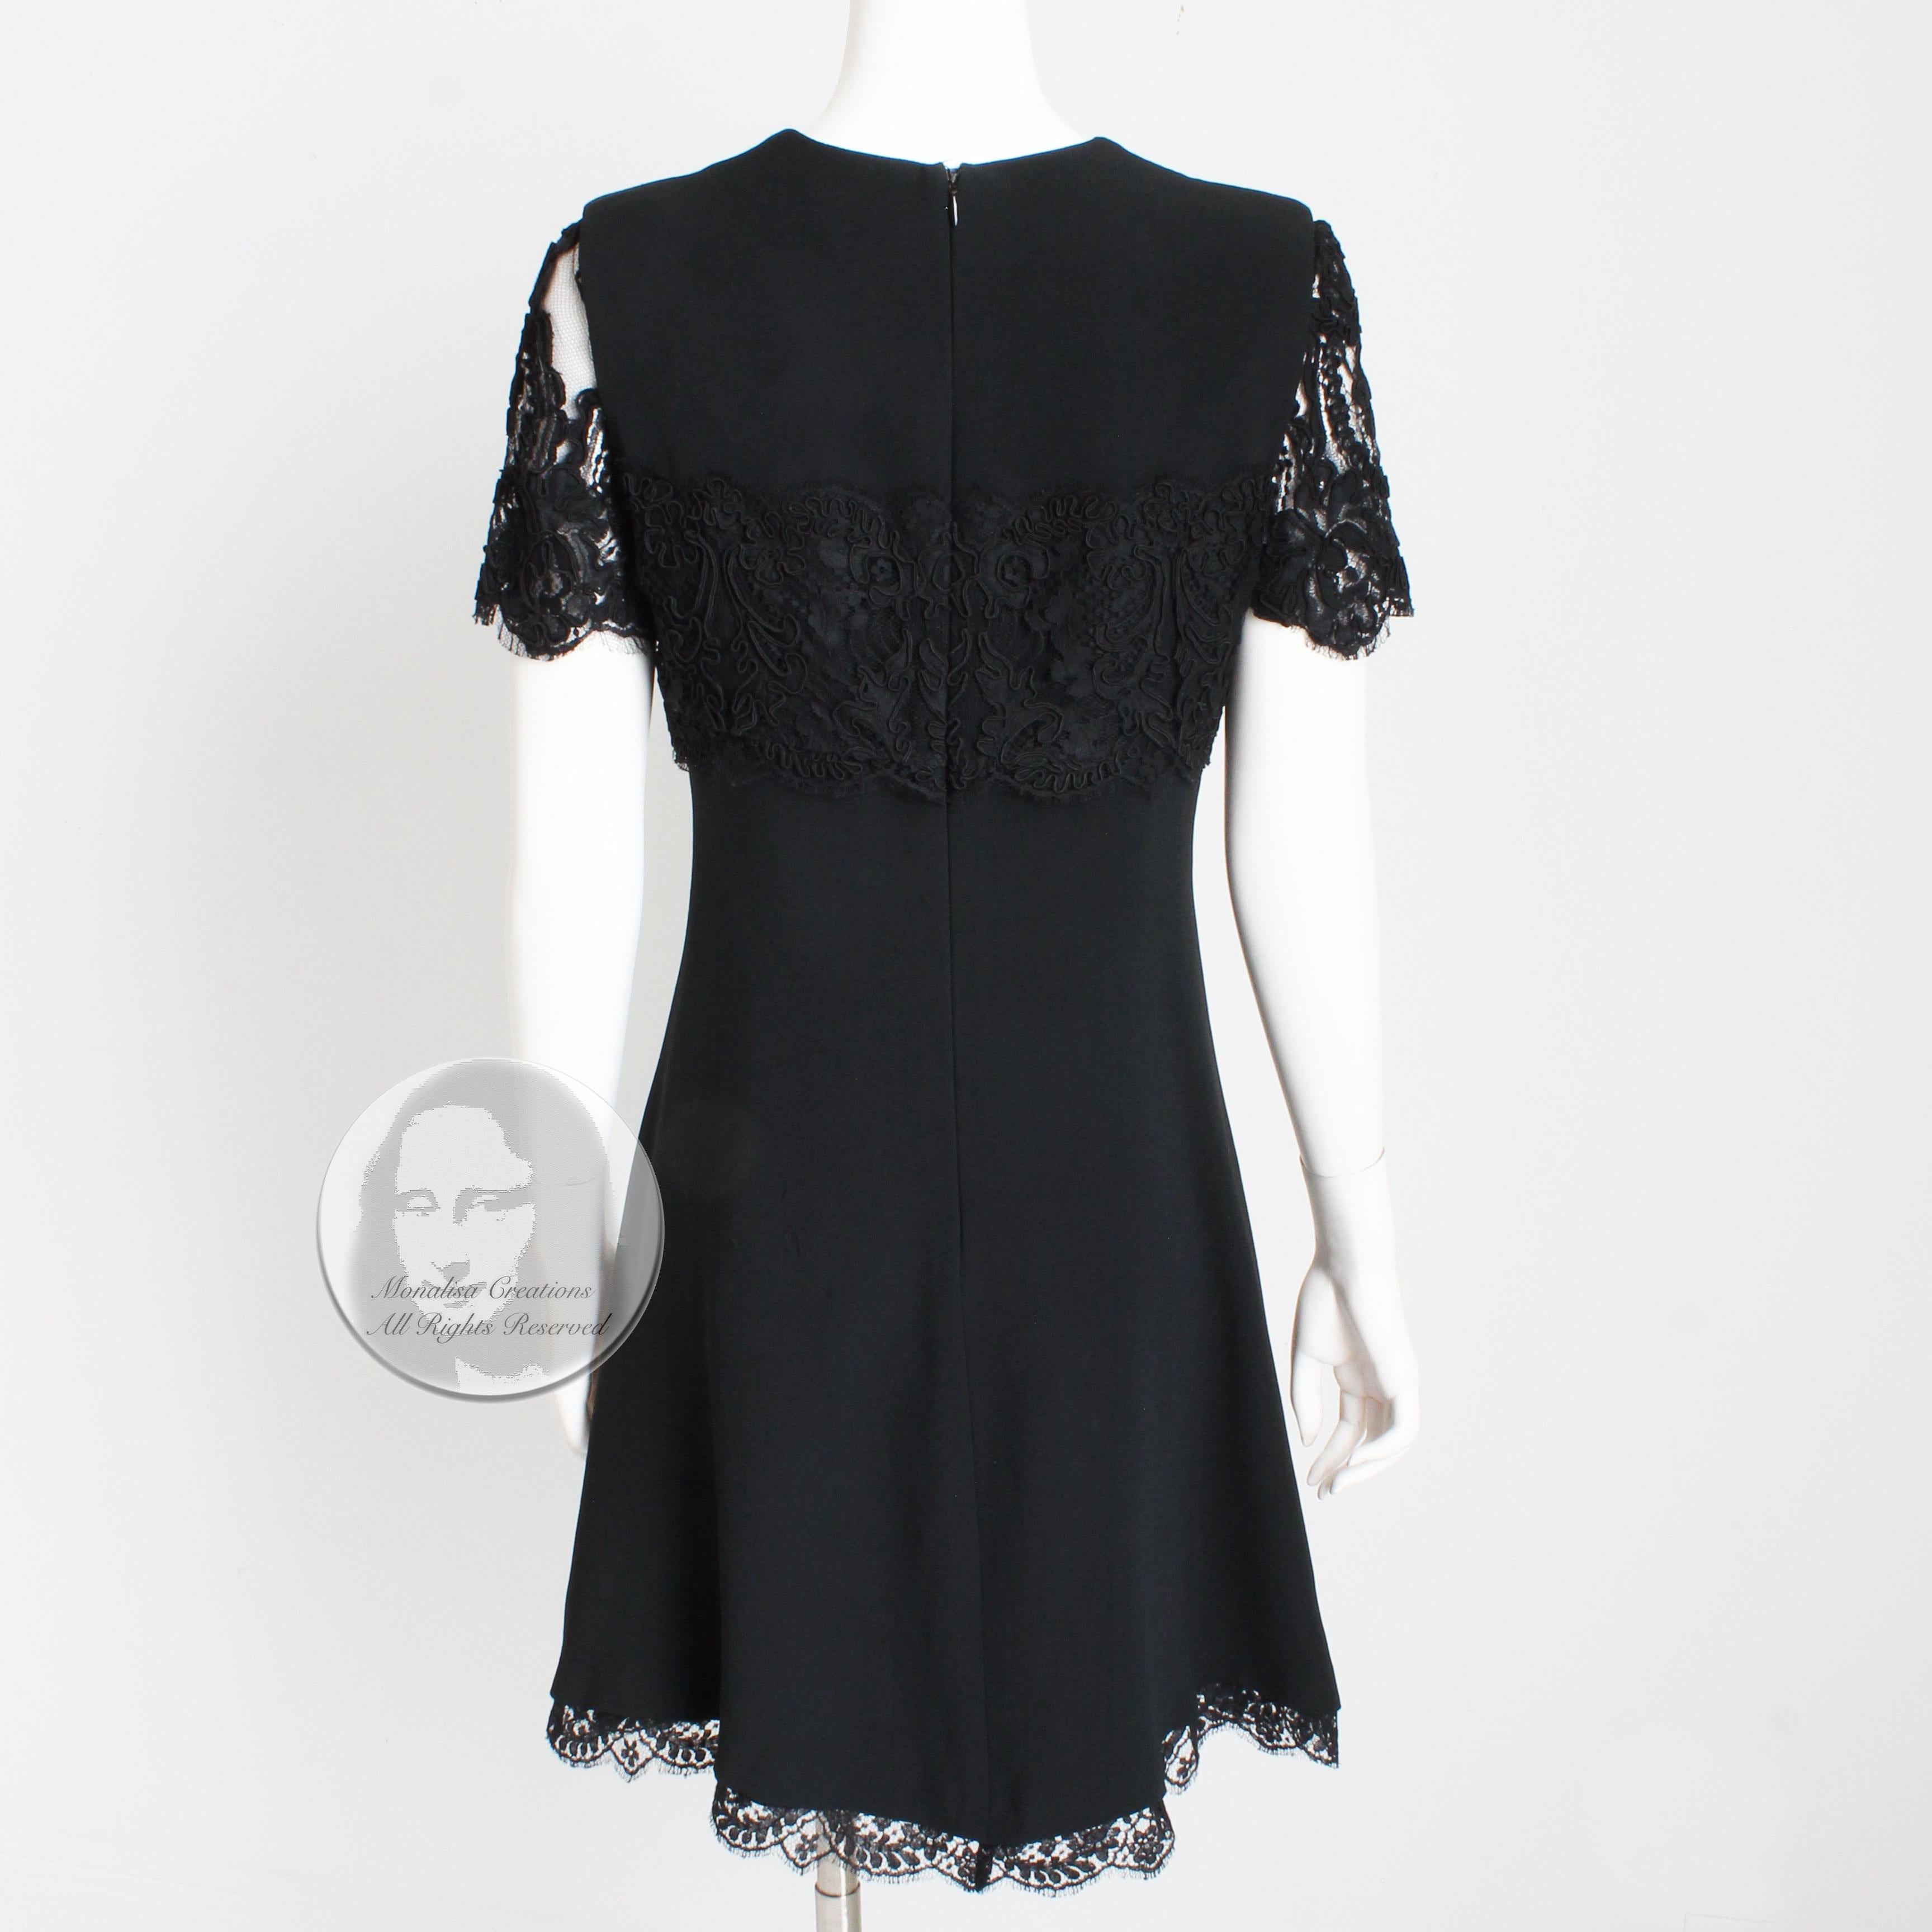 Louis Feraud Dress Black Lace Cocktail Little Black Dress Evening Party Vintage  5